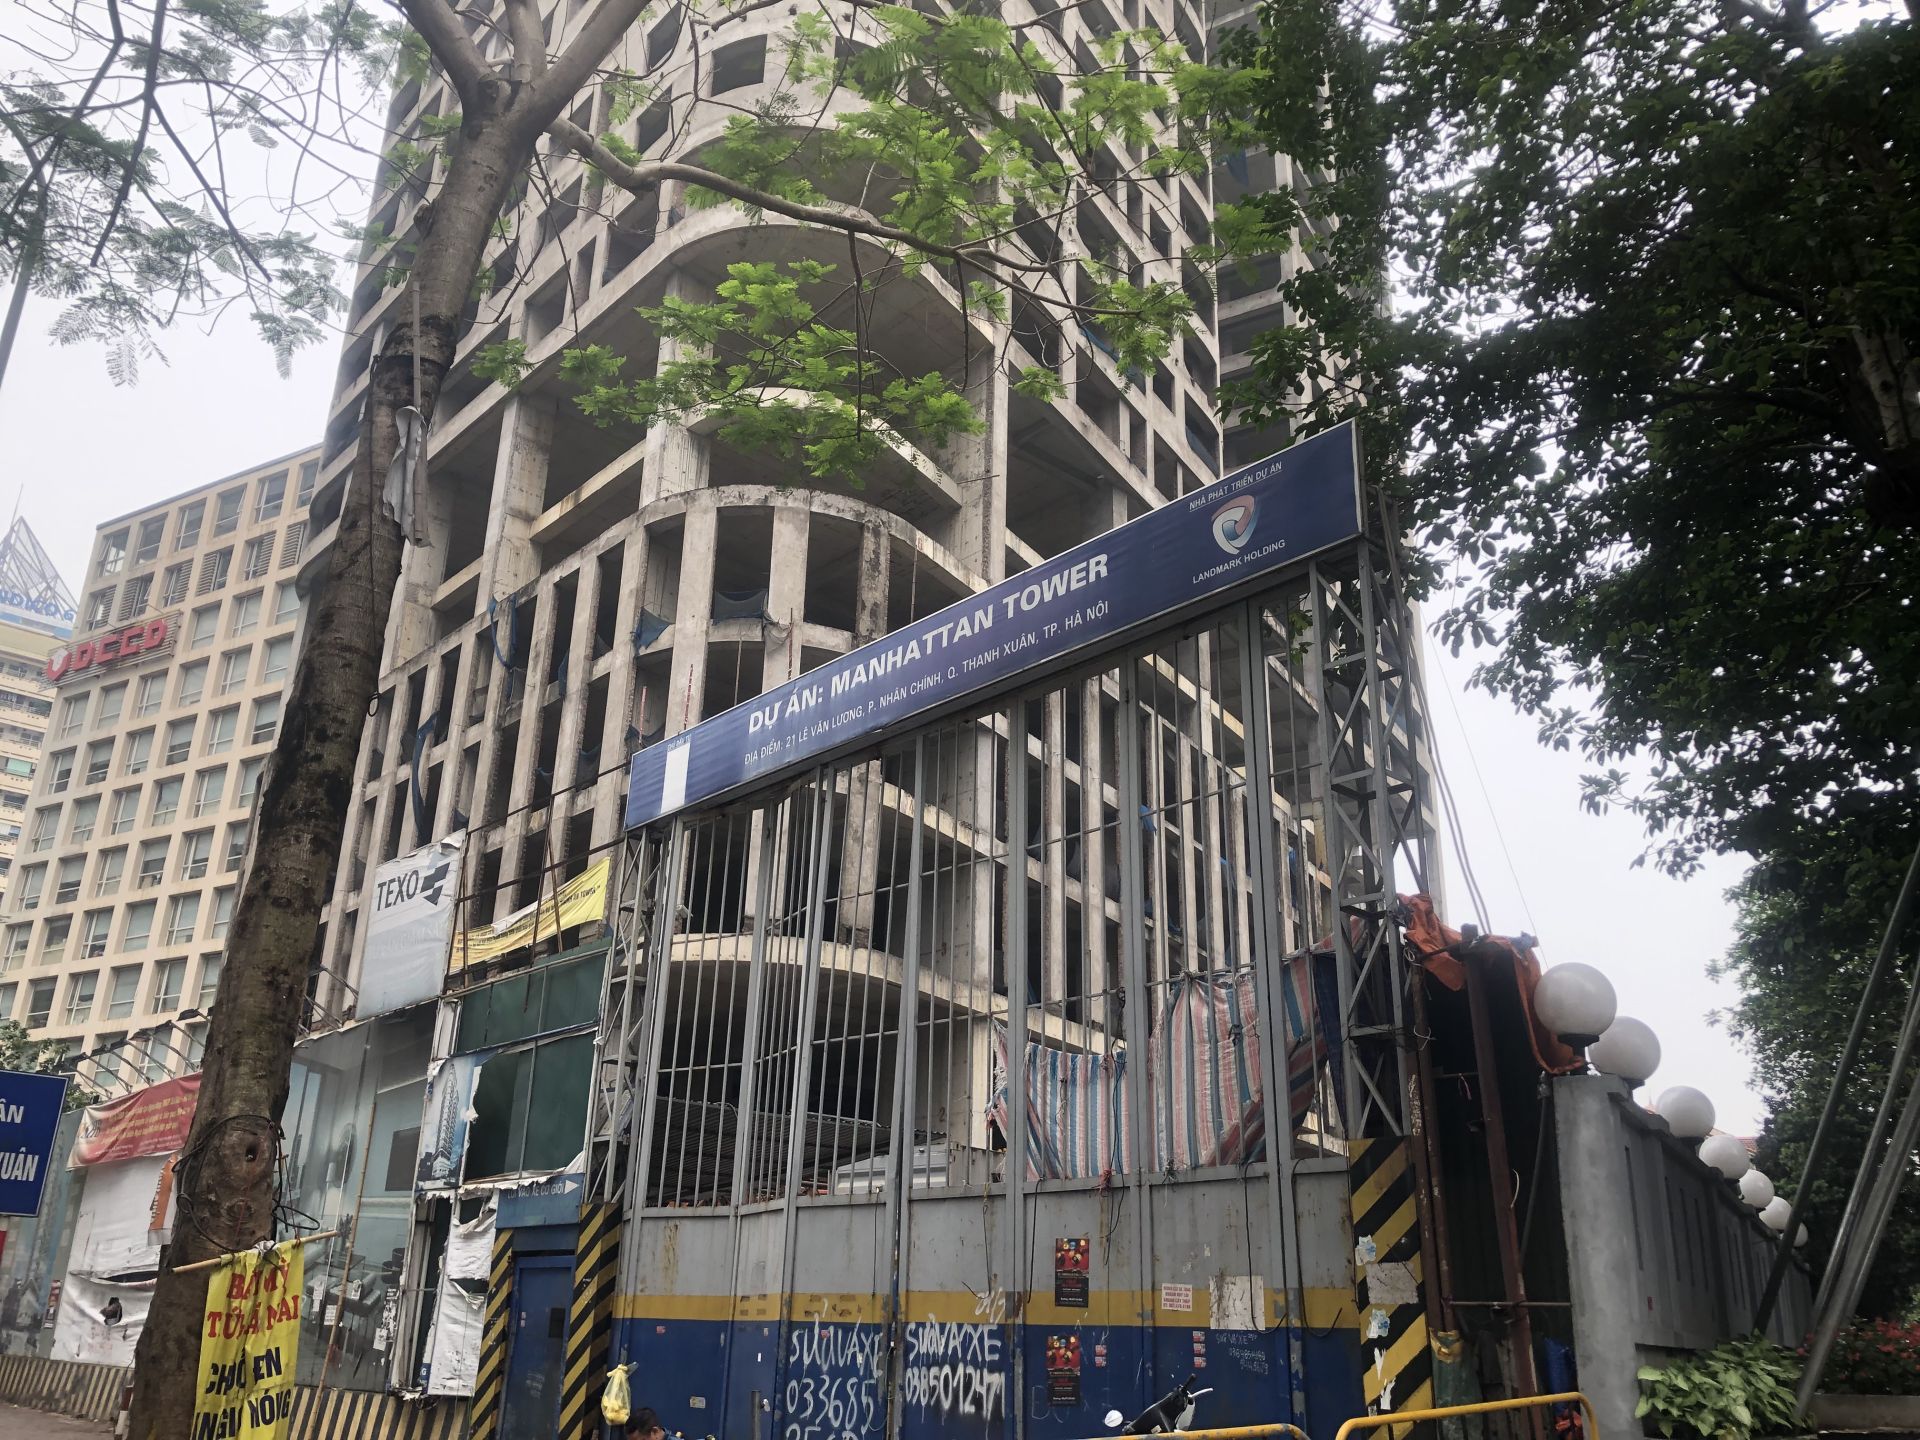 Cơ quan điều tra Bộ Quốc phòng khởi tố vụ án liên quan dự án Thành An Tower ở Hà Nội- Ảnh 1.